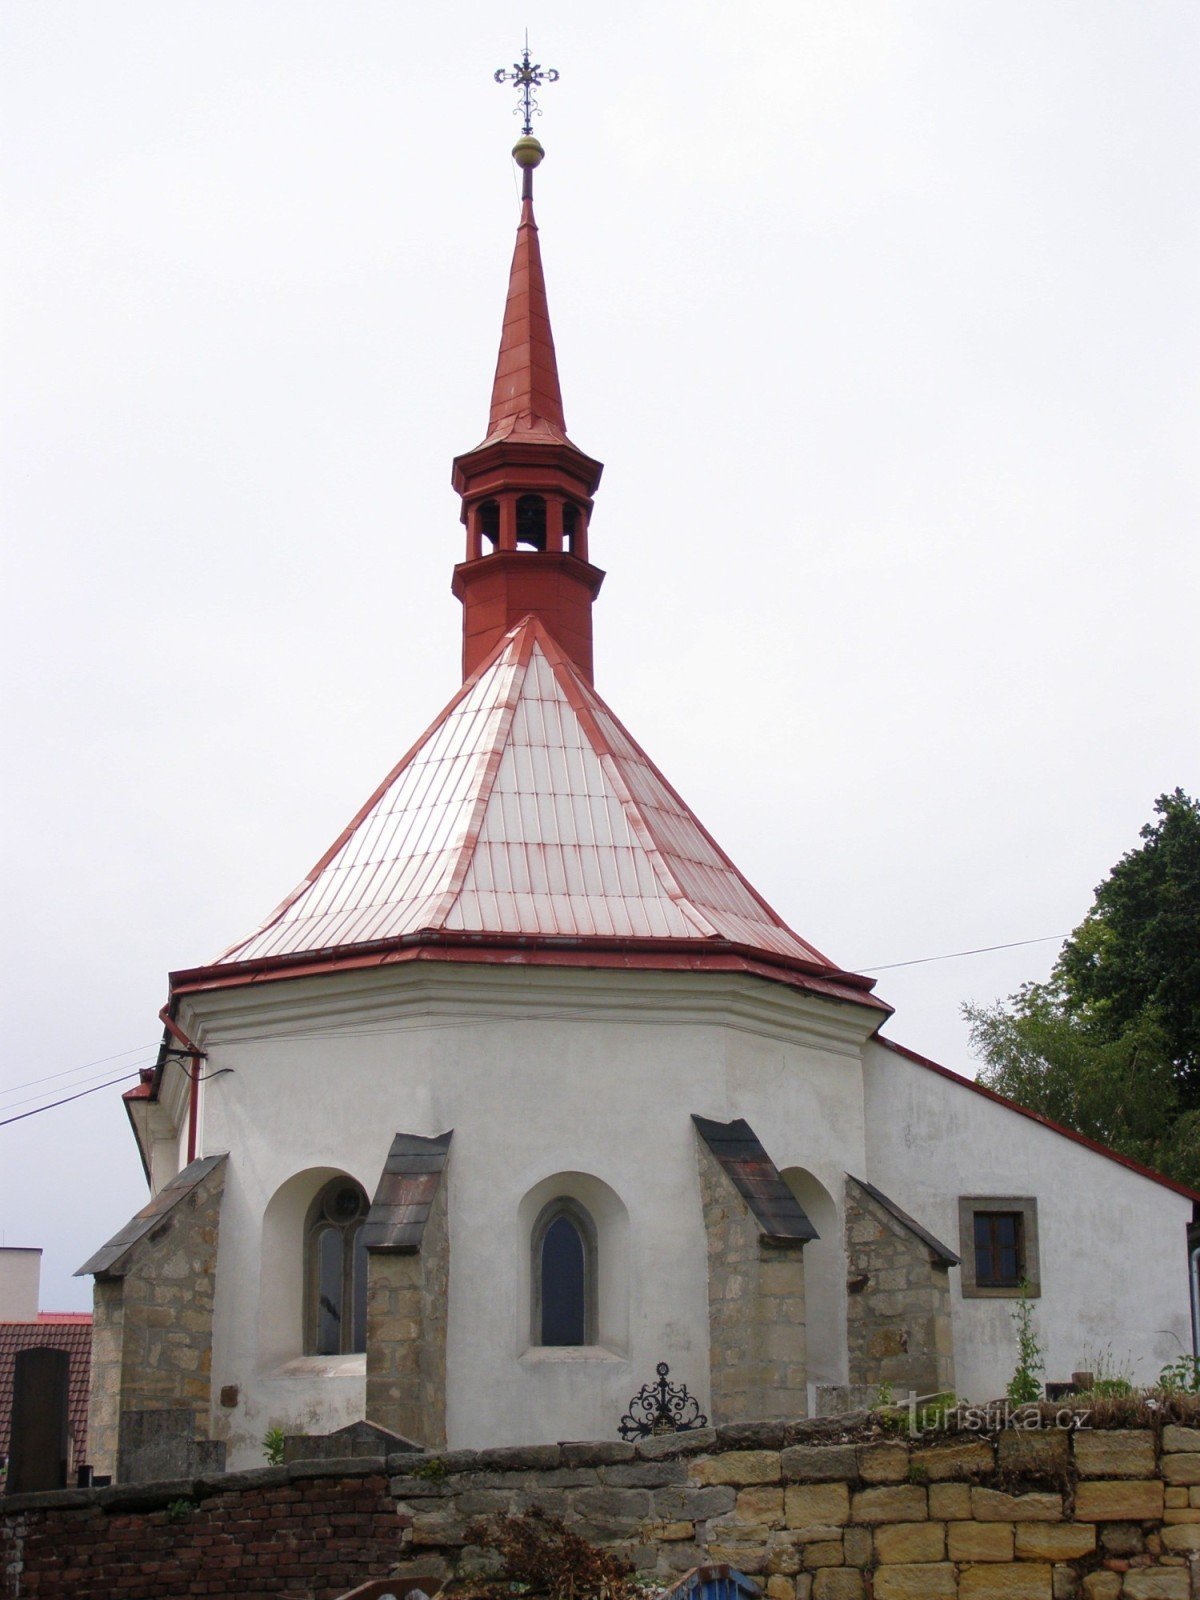 Mladějov - biserica Sf. Giljí cu clopotnița